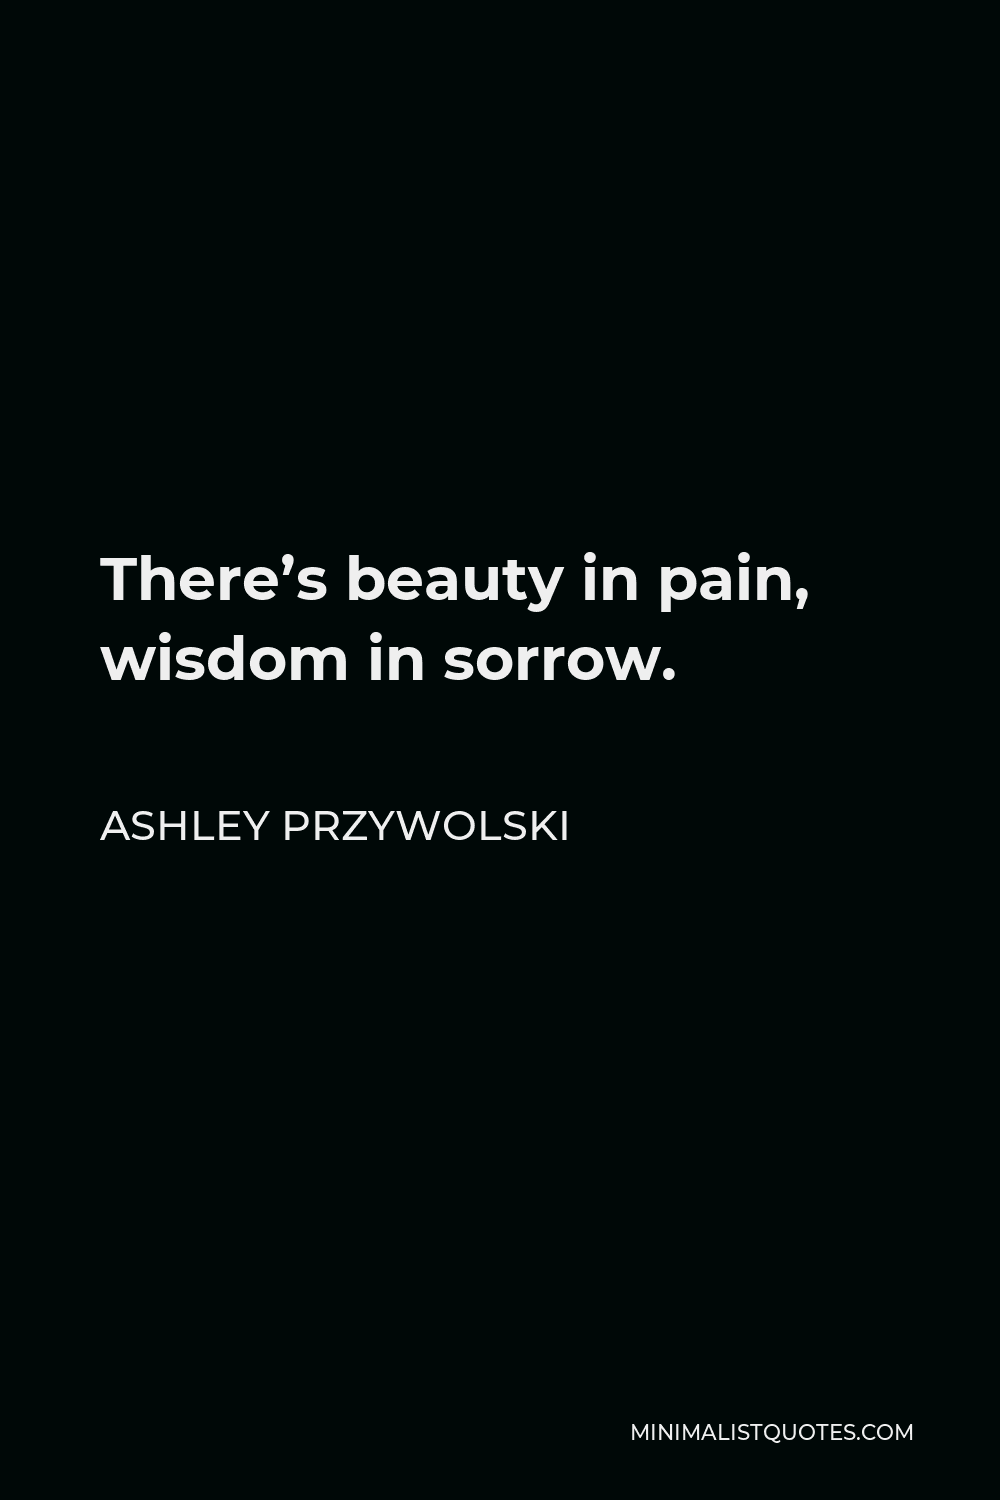 Ashley Przywolski Quote - There’s beauty in pain, wisdom in sorrow.